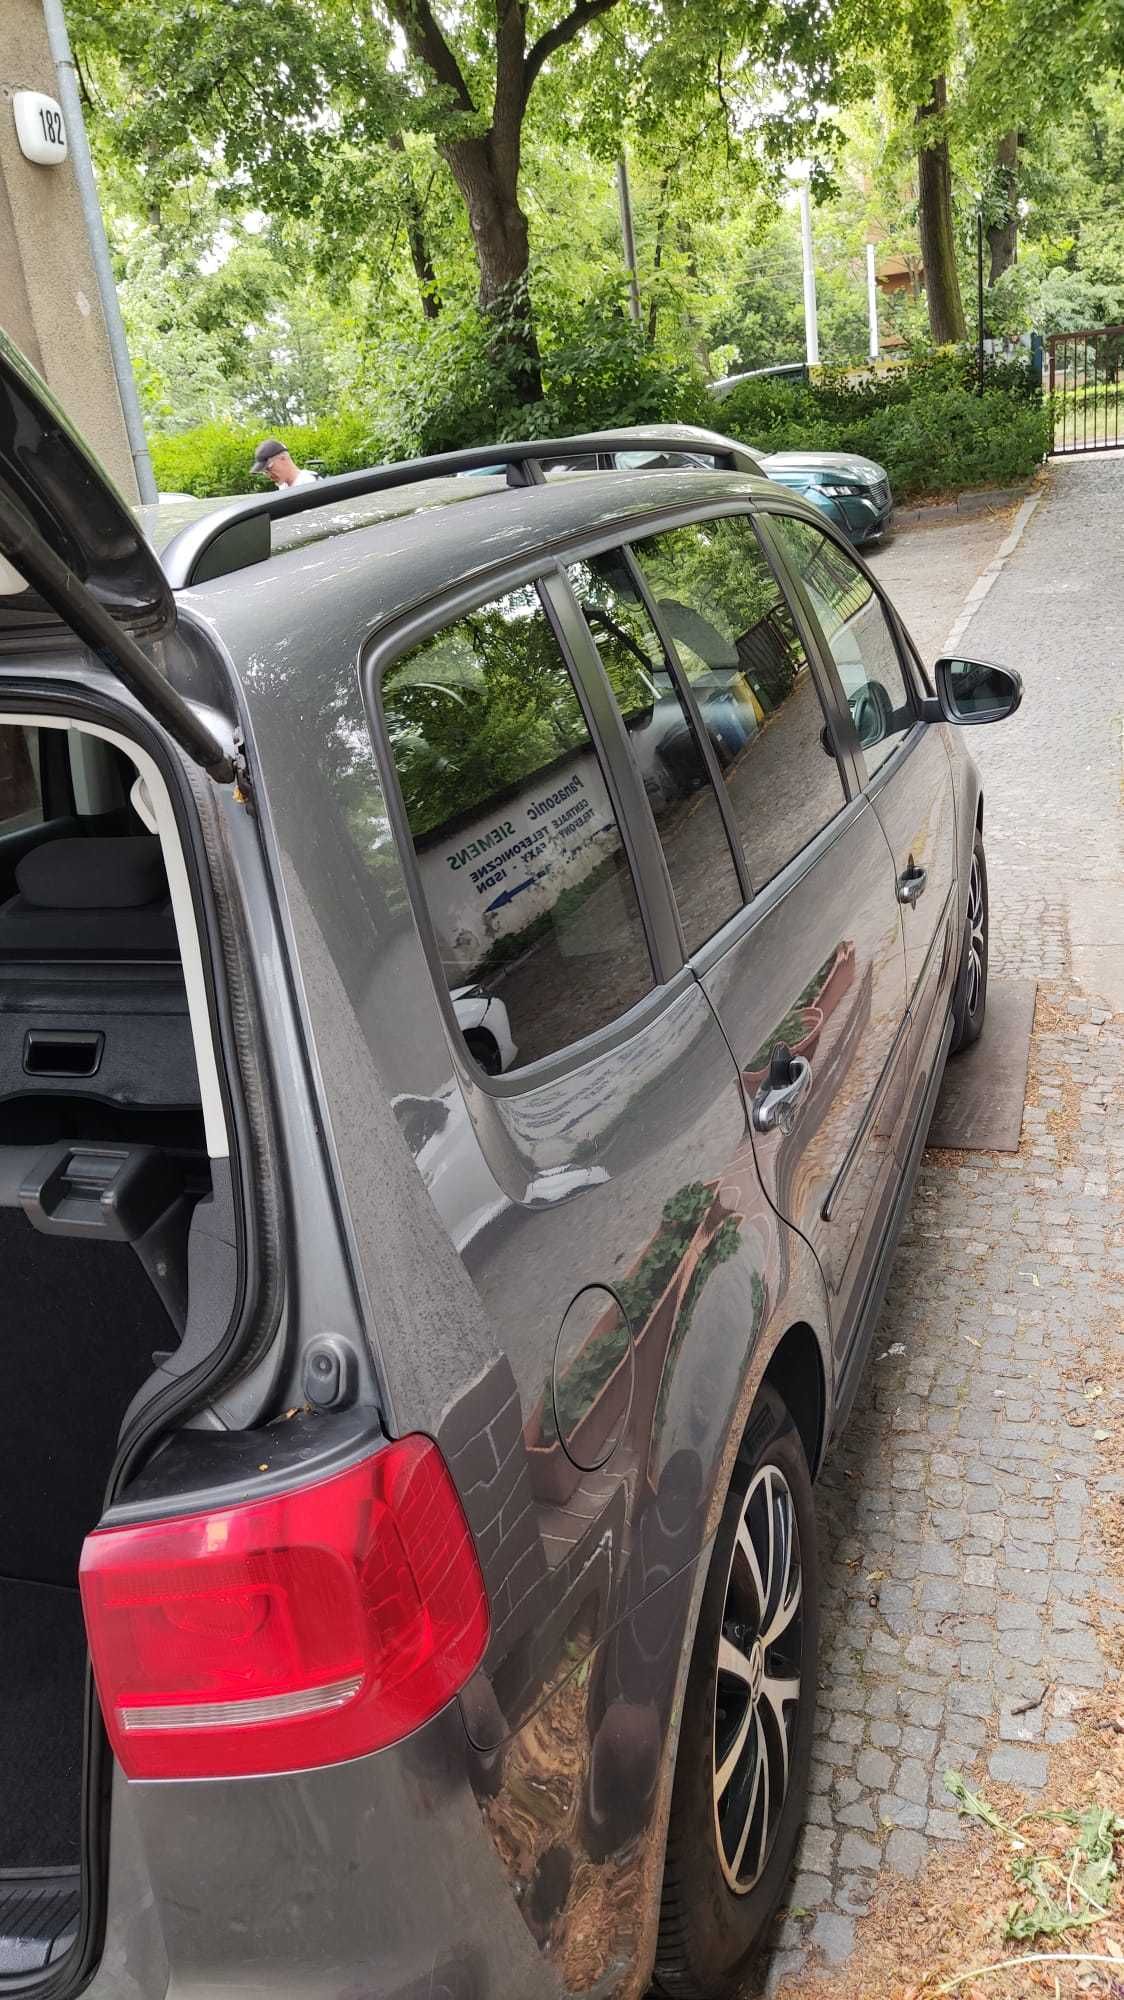 VW TOURAN 1.6 TDI 2013r/7 osobowy/webasto /dach panorama/ bezwypadkowy